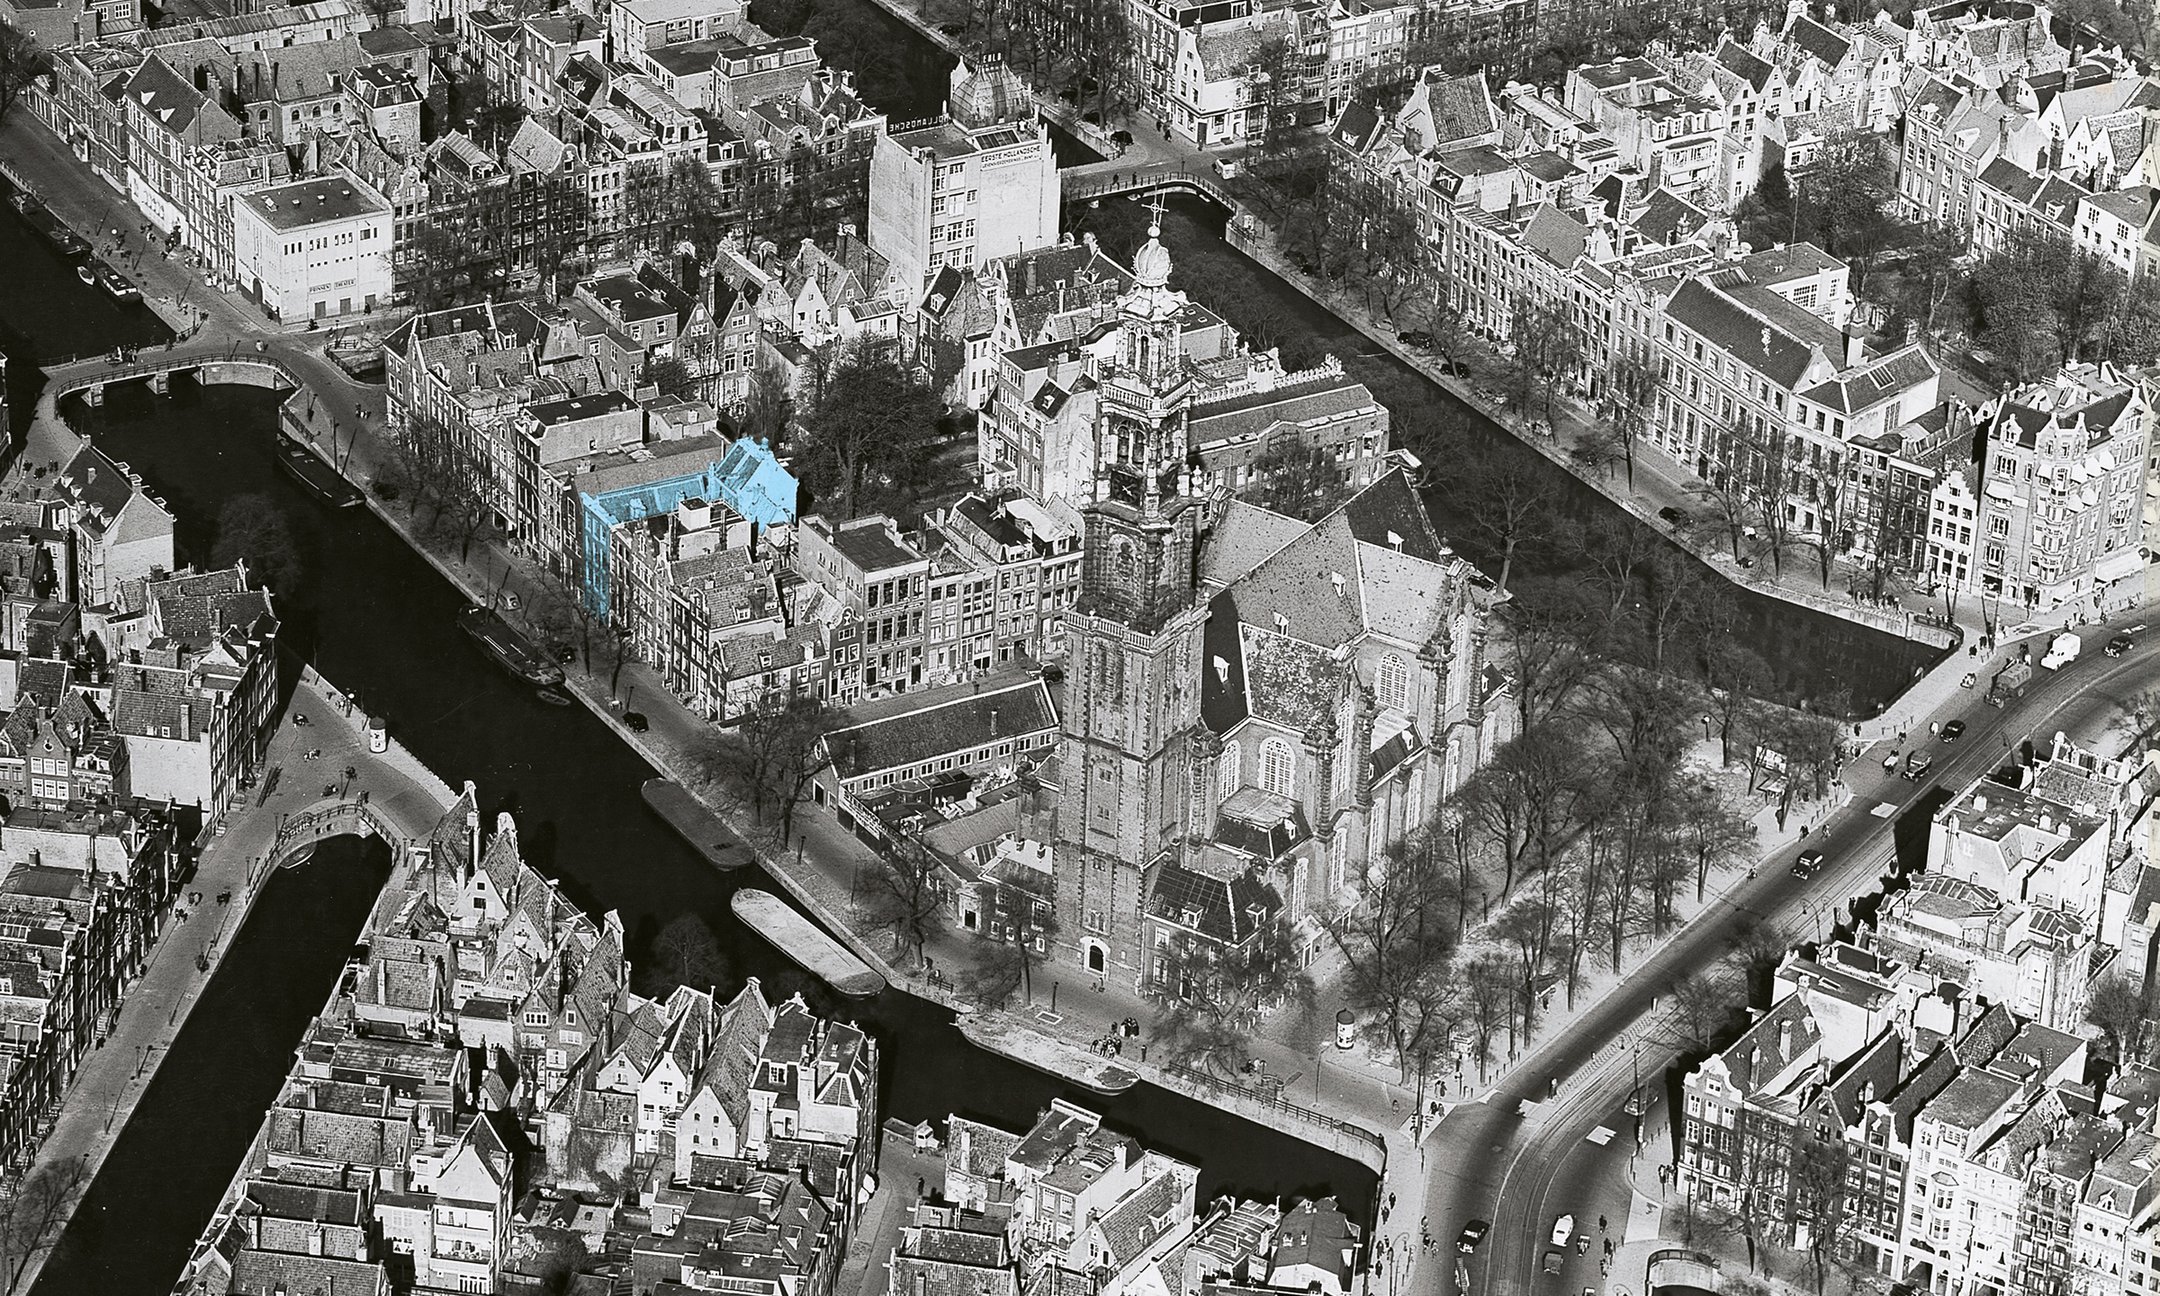 Op deze luchtfoto uit 1949 is het bedrijfspand van Otto Frank te zien. Het voor- en achterhuis zijn aangegeven